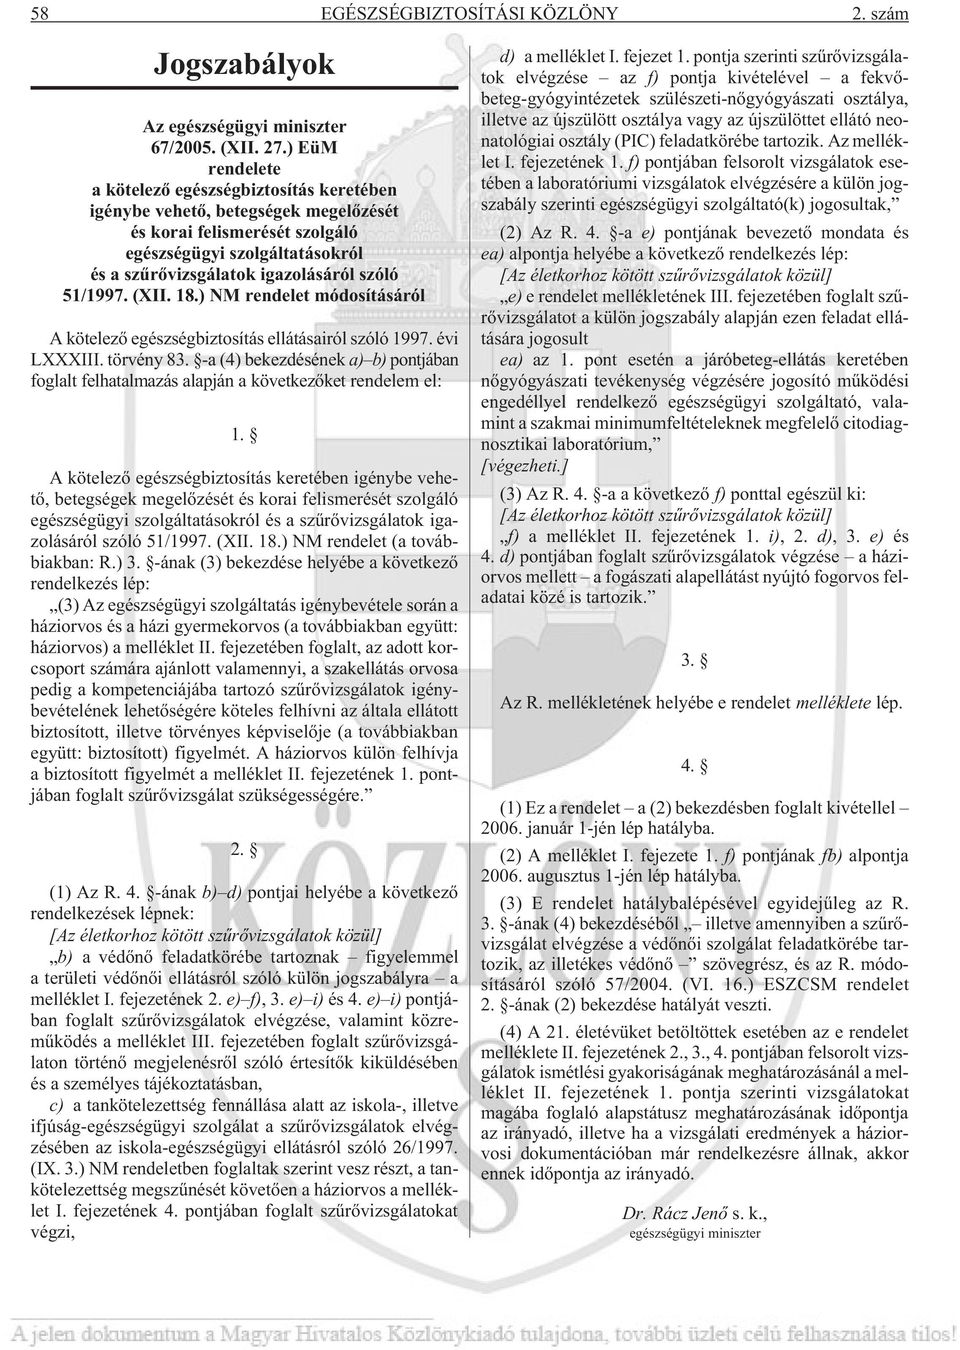 51/1997. (XII. 18.) NM rendelet módosításáról A kötelezõ egészségbiztosítás ellátásairól szóló 1997. évi LXXXIII. törvény 83.